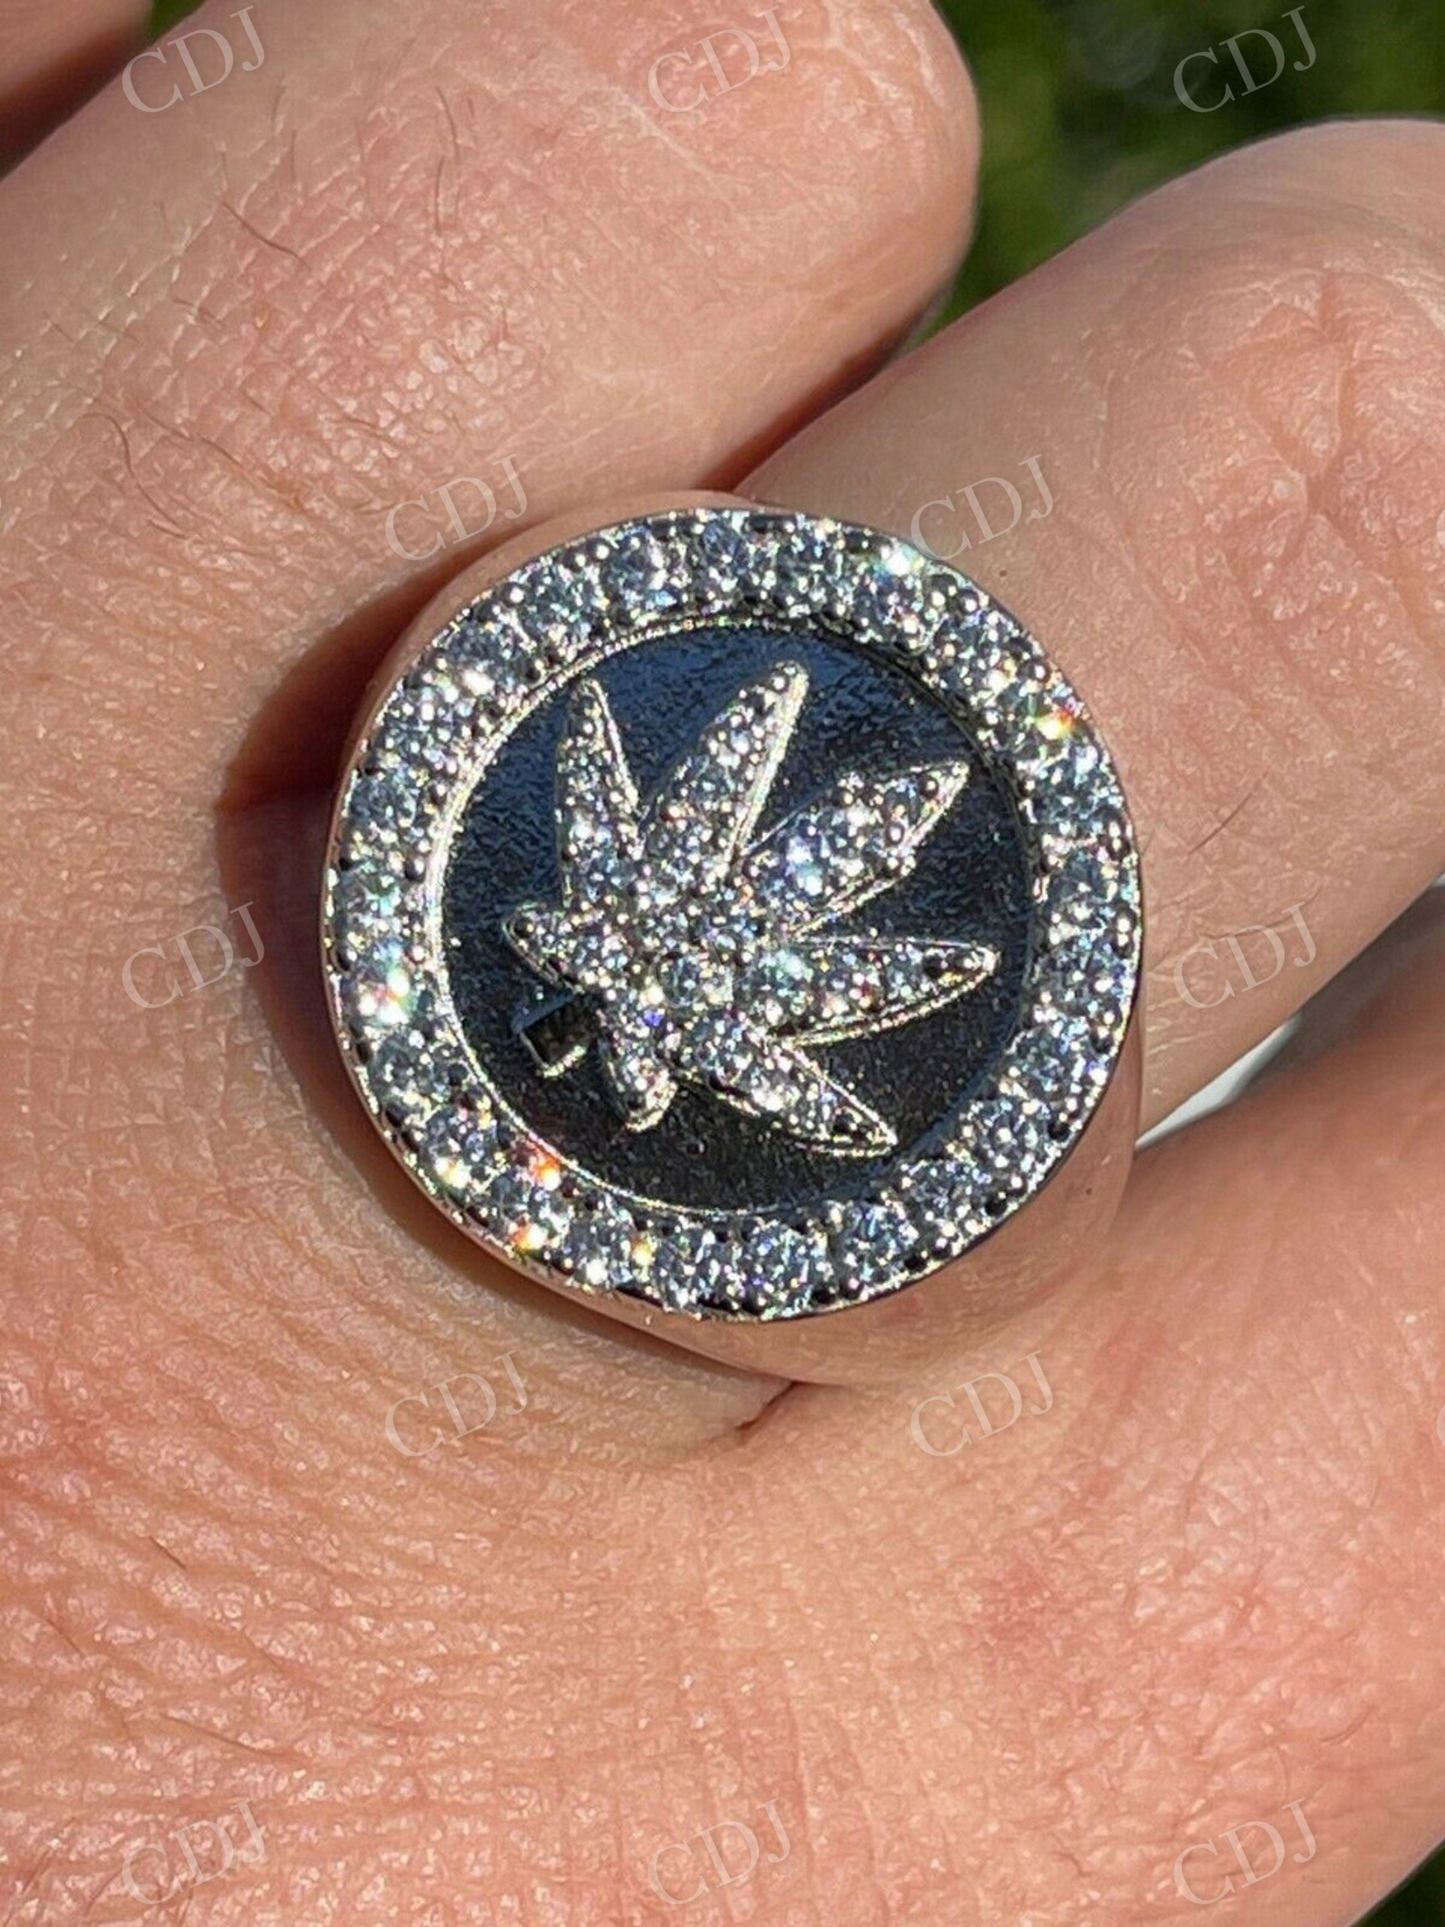 Marijuana Leaf Men's Diamond Ring  customdiamjewel   